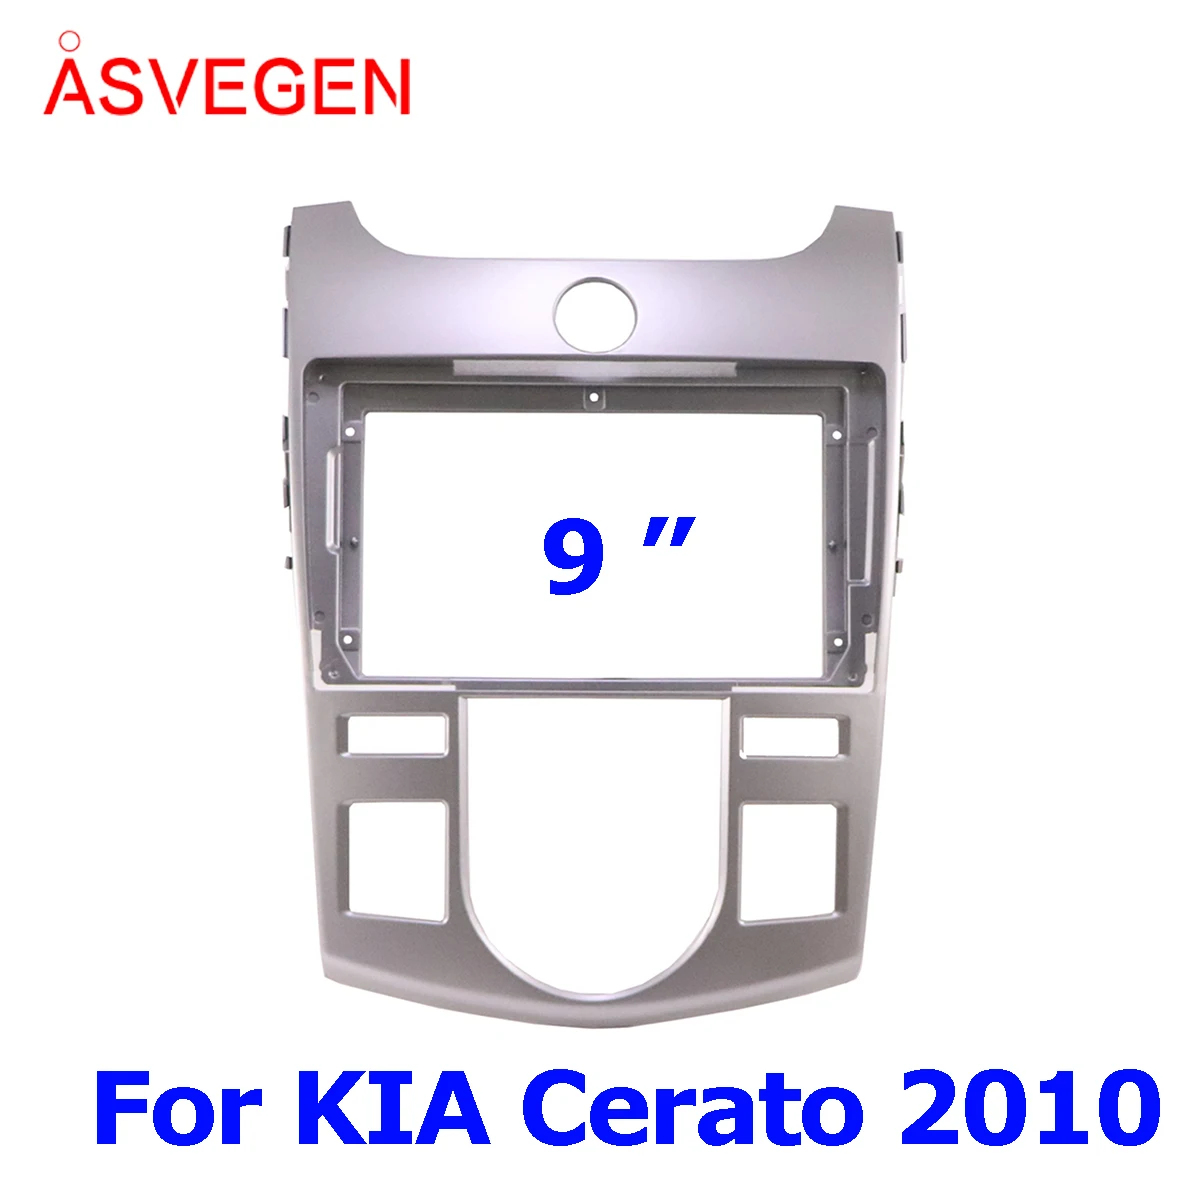 

Рамка для автомобильного радио для KIA Cerato 2010, рамка для Dvd, установка панели, крепление на приборную панель